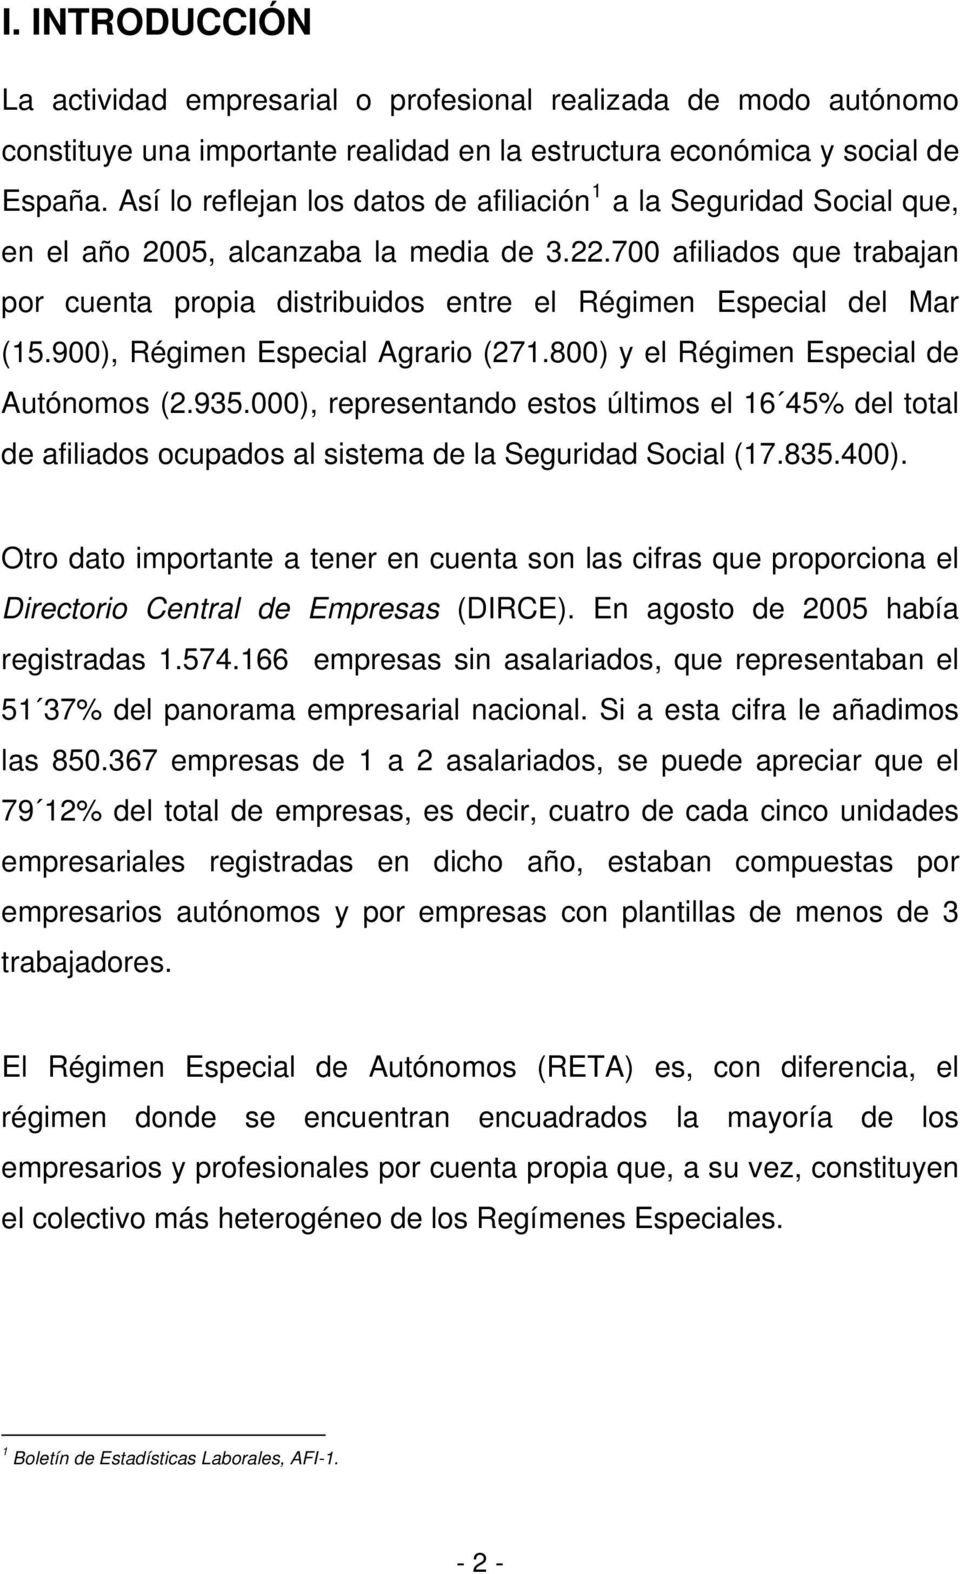 700 afiliados que trabajan por cuenta propia distribuidos entre el Régimen Especial del Mar (15.900), Régimen Especial Agrario (271.800) y el Régimen Especial de Autónomos (2.935.